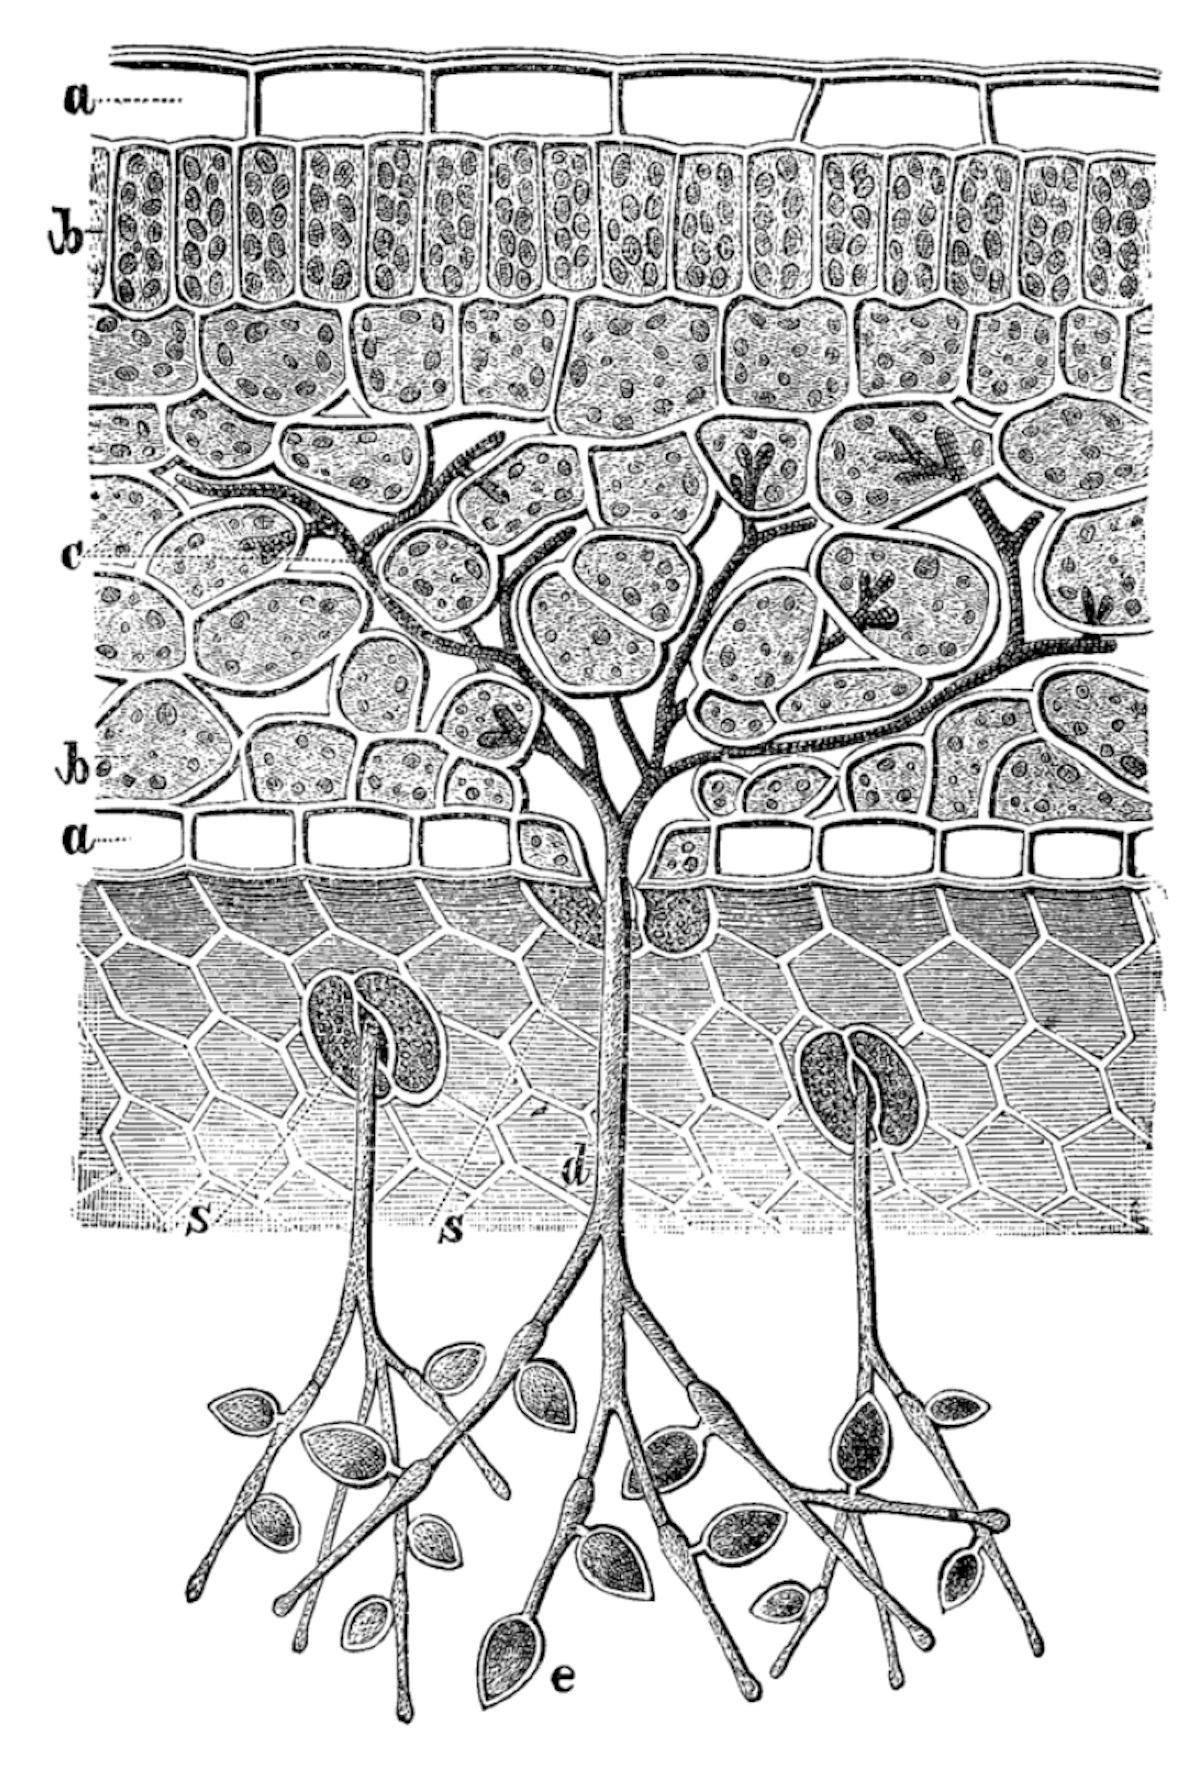 Sui rami sporangiofori si sviluppano gli sporangi, all'interno dei quali sono presenti le zoospore che propagano l'infezione di peronospora